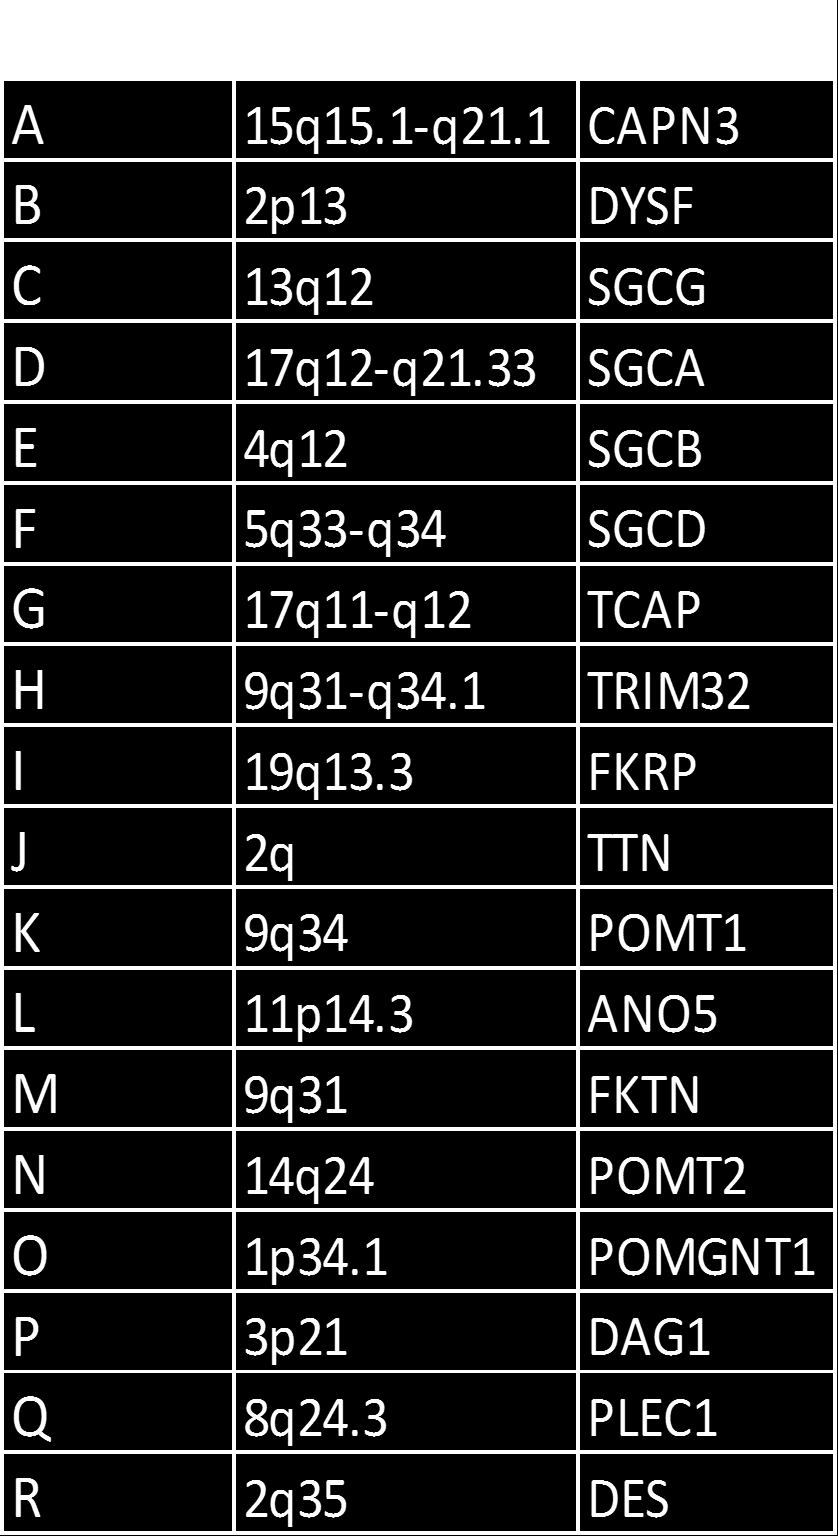 LGMD1 Kromosom Gen Protein A 5q31.2 TTID myotilin B 1q21 LMNA LaminA/C C 3p25.3 CAV3 Caveolin 3 D 7q36.3 DNAJB6 E 6q23 DES Desmin F 7q32.